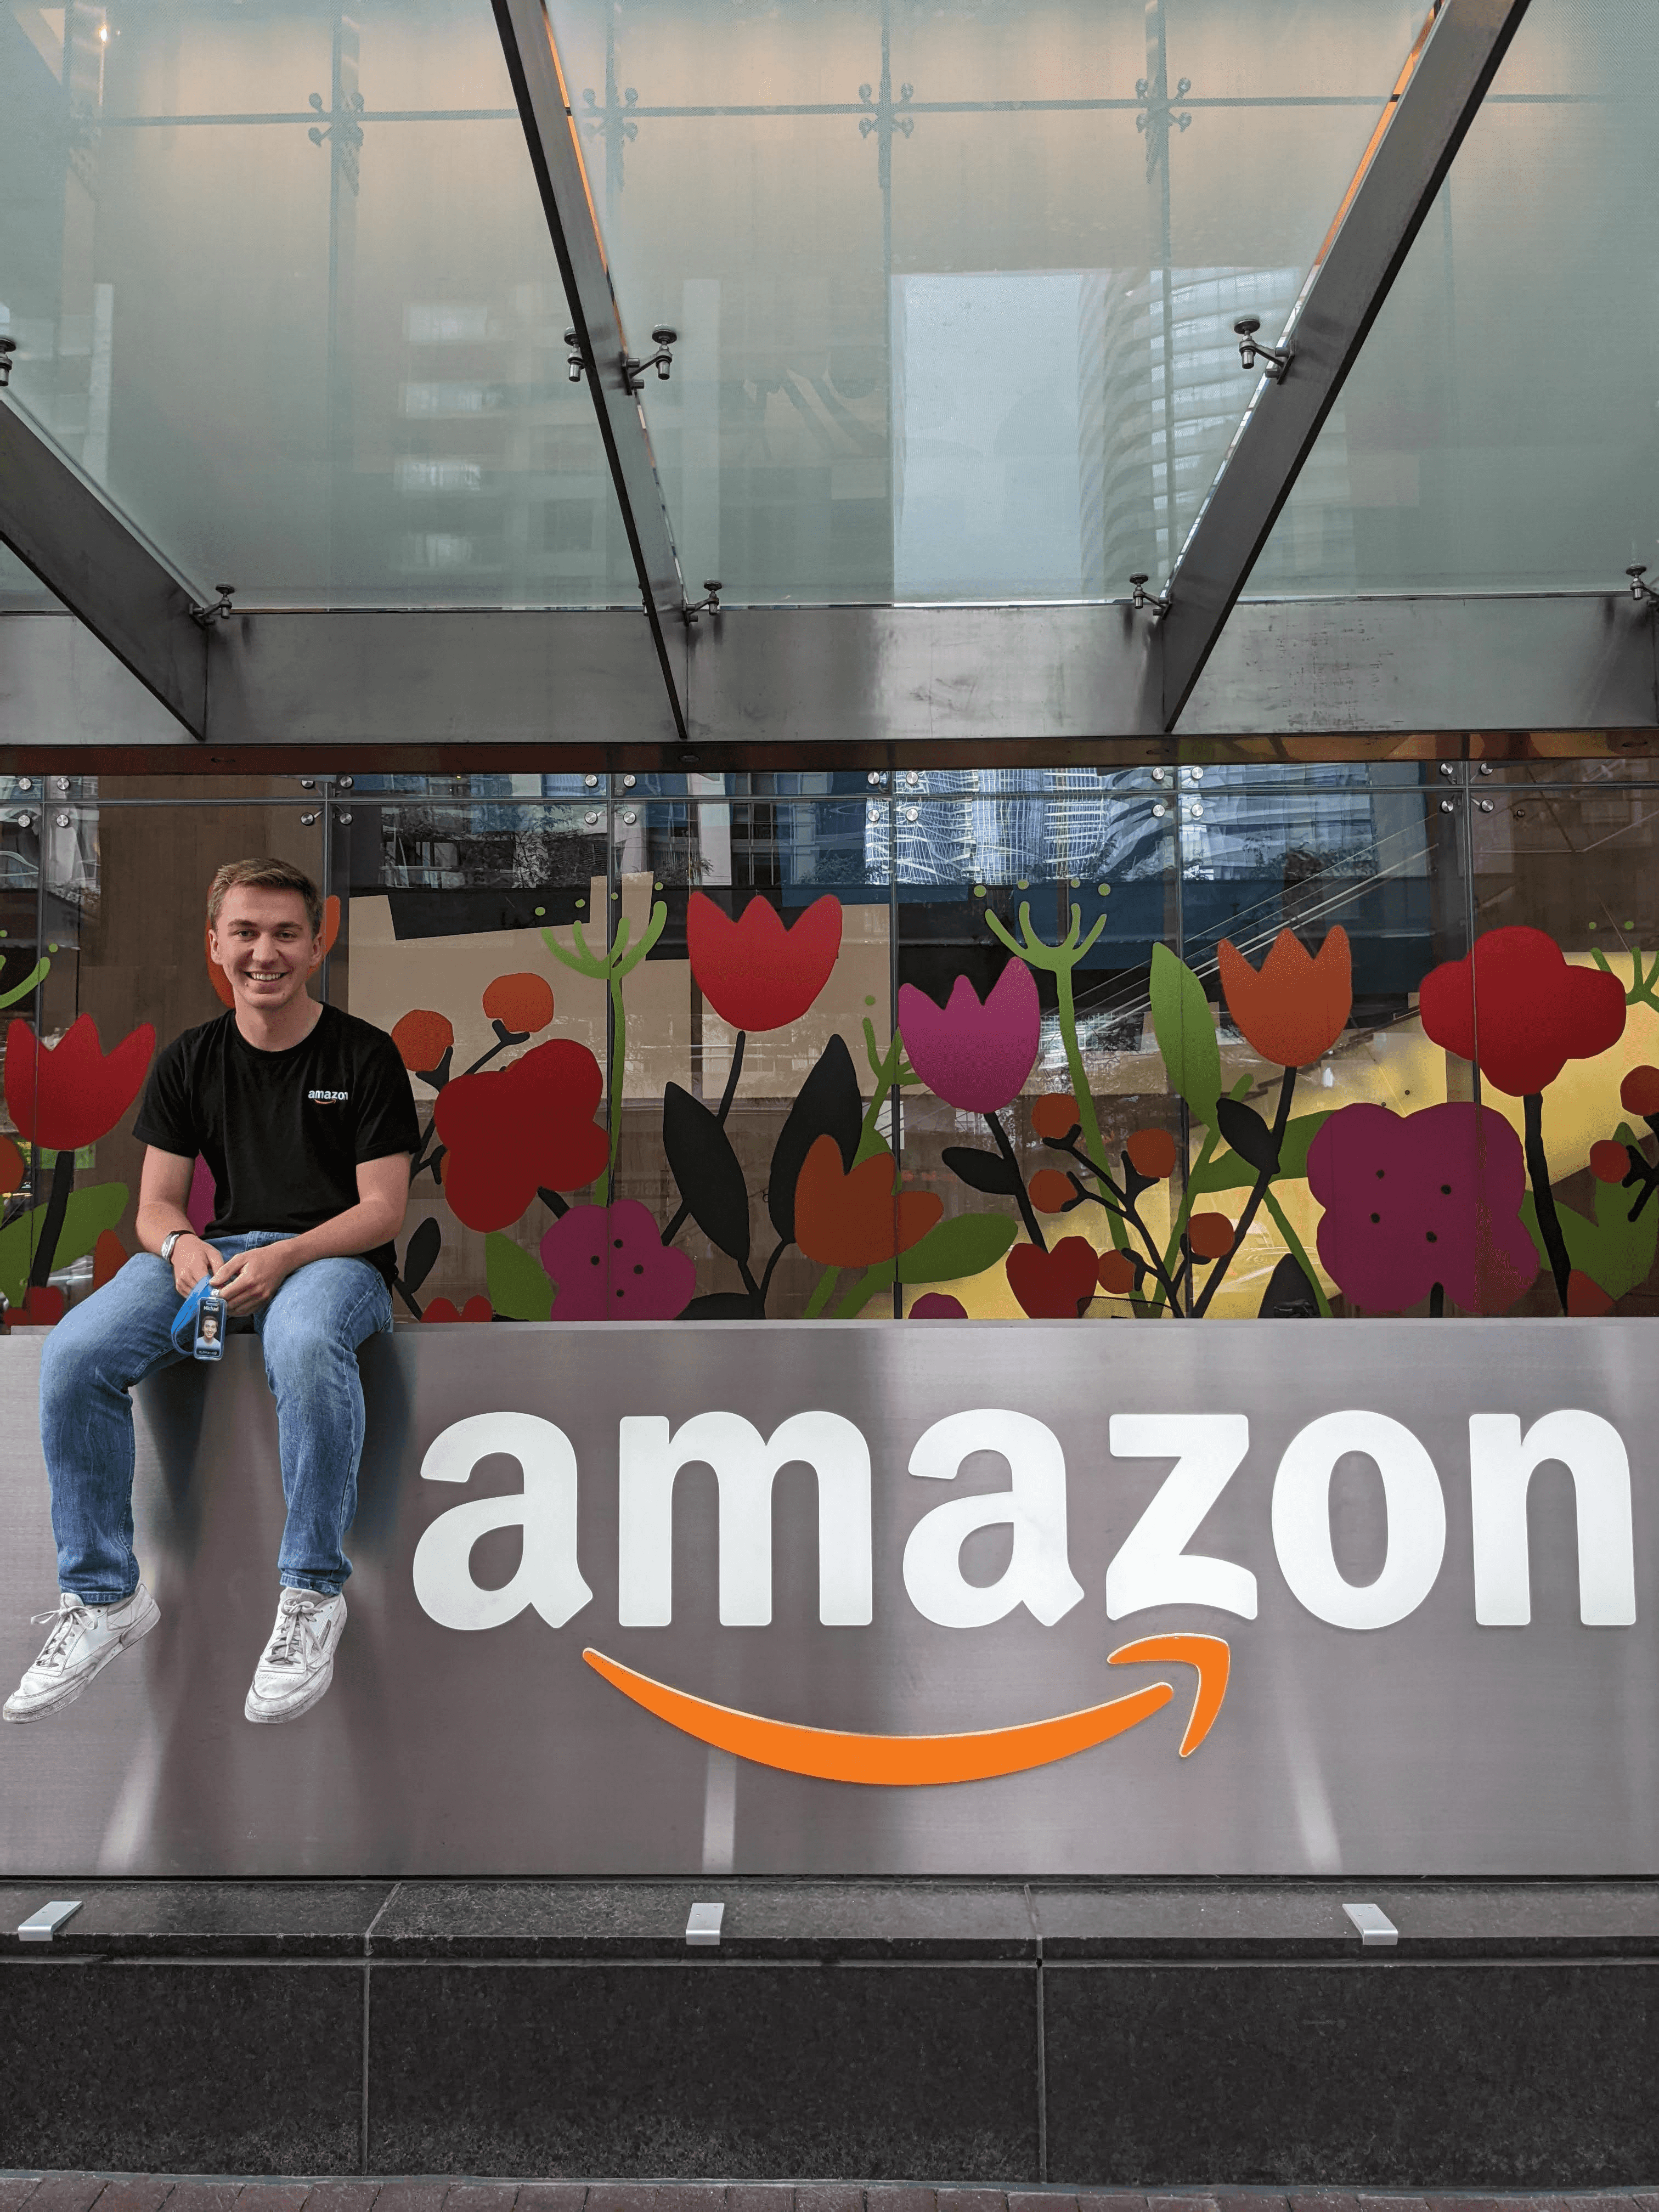 Day One: My internship at Amazon header